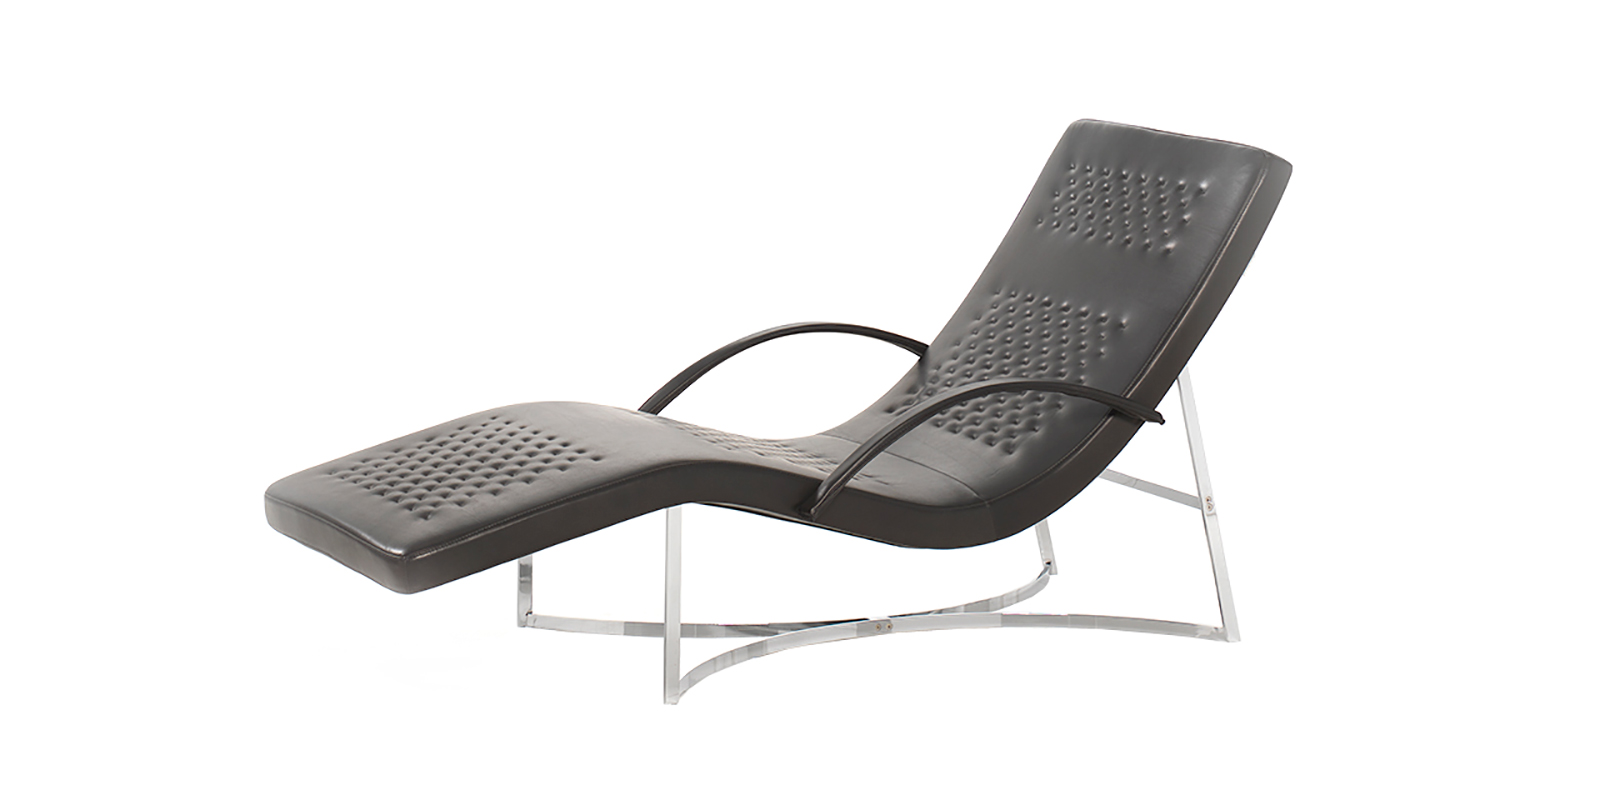 Chaise longue in pelle e metallo. Interamente realizzata a mano in Italia. Vendita online di mobili design di lusso con consegna a domicilio gratuita.